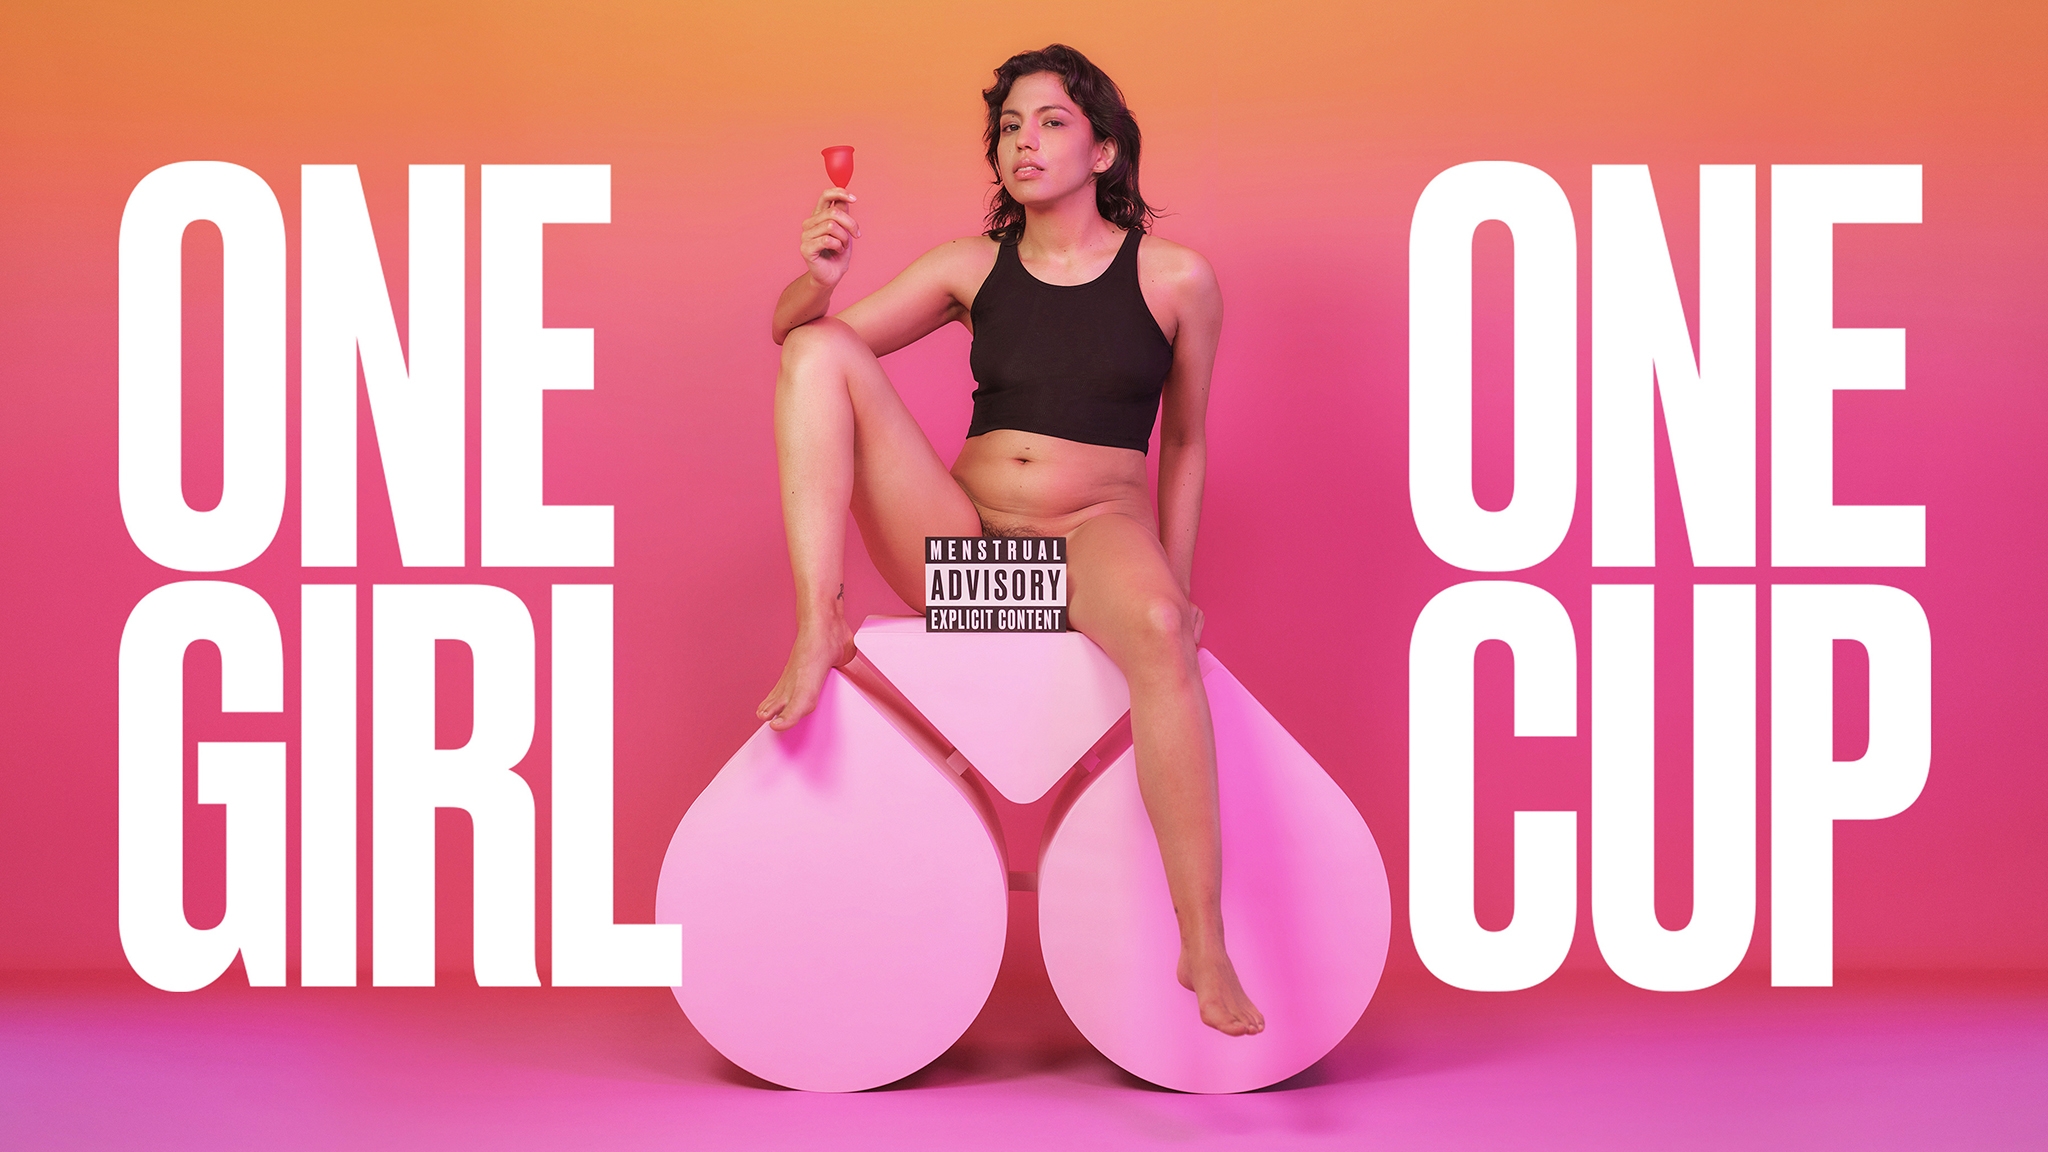 Too hot for Instagram: Die Kampagne "One Girl, One Cup" war ein Erfolg für The Female Company. Der könnte jetzt wegen Plagiatsvorwürfen getrübt sein. Foto: The Female Company.